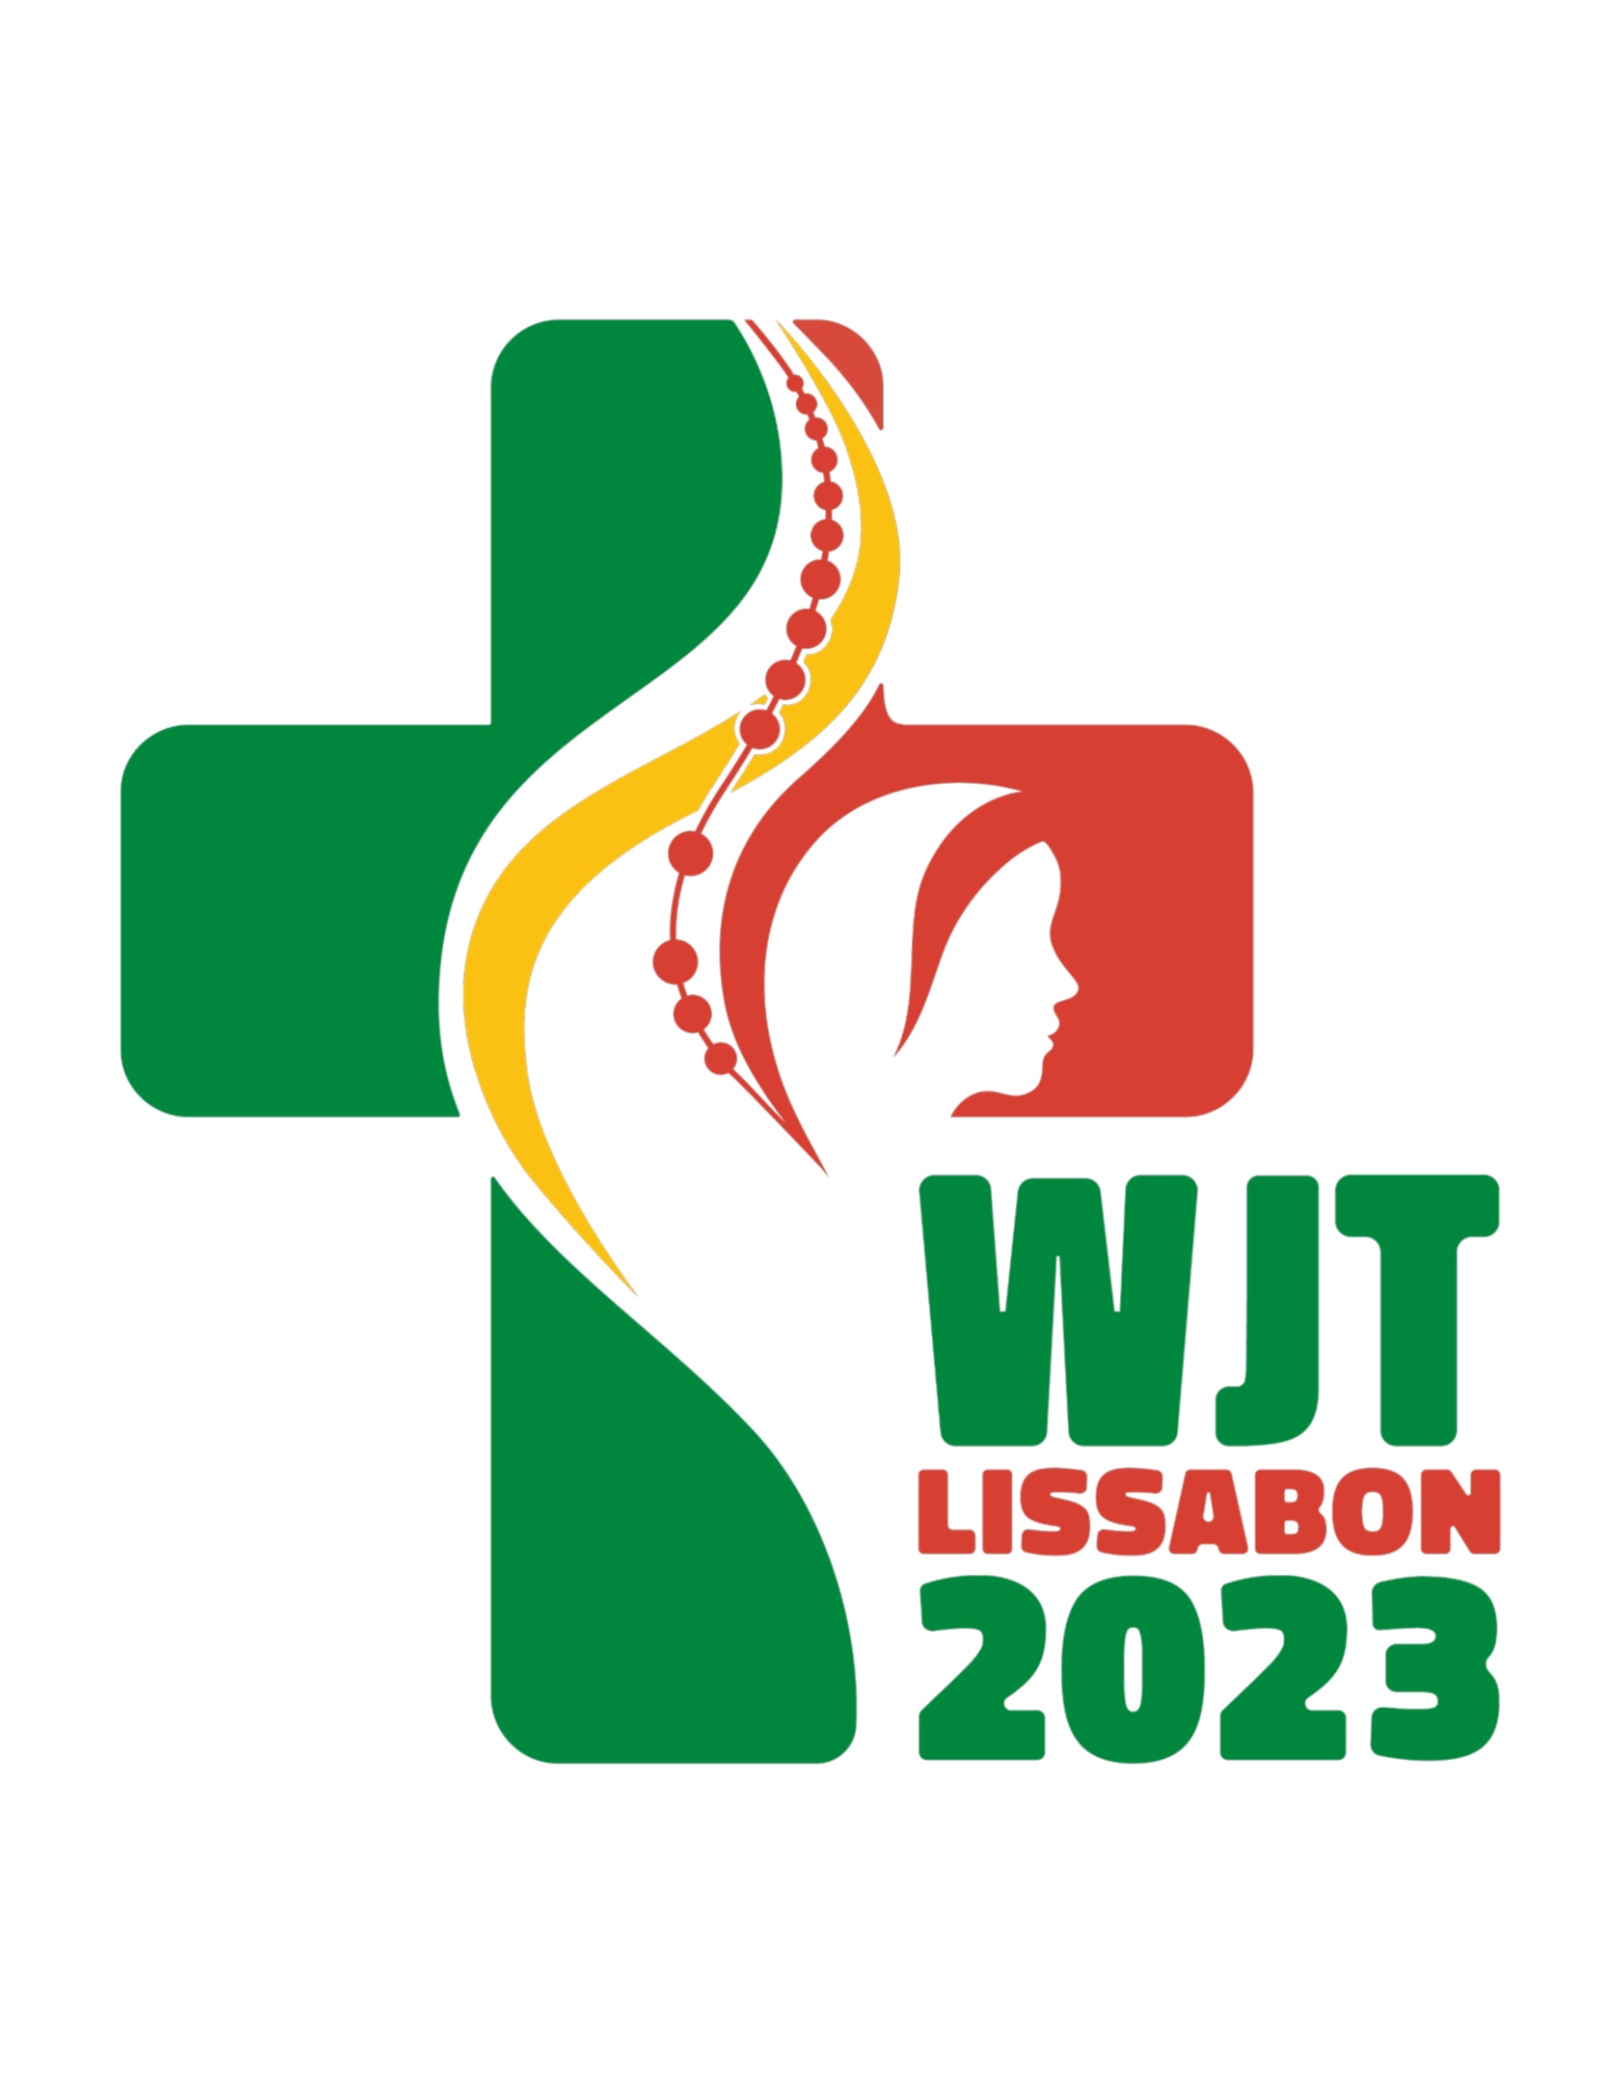 WJT23 Logo Weltjugendtag 2023 Lissabon